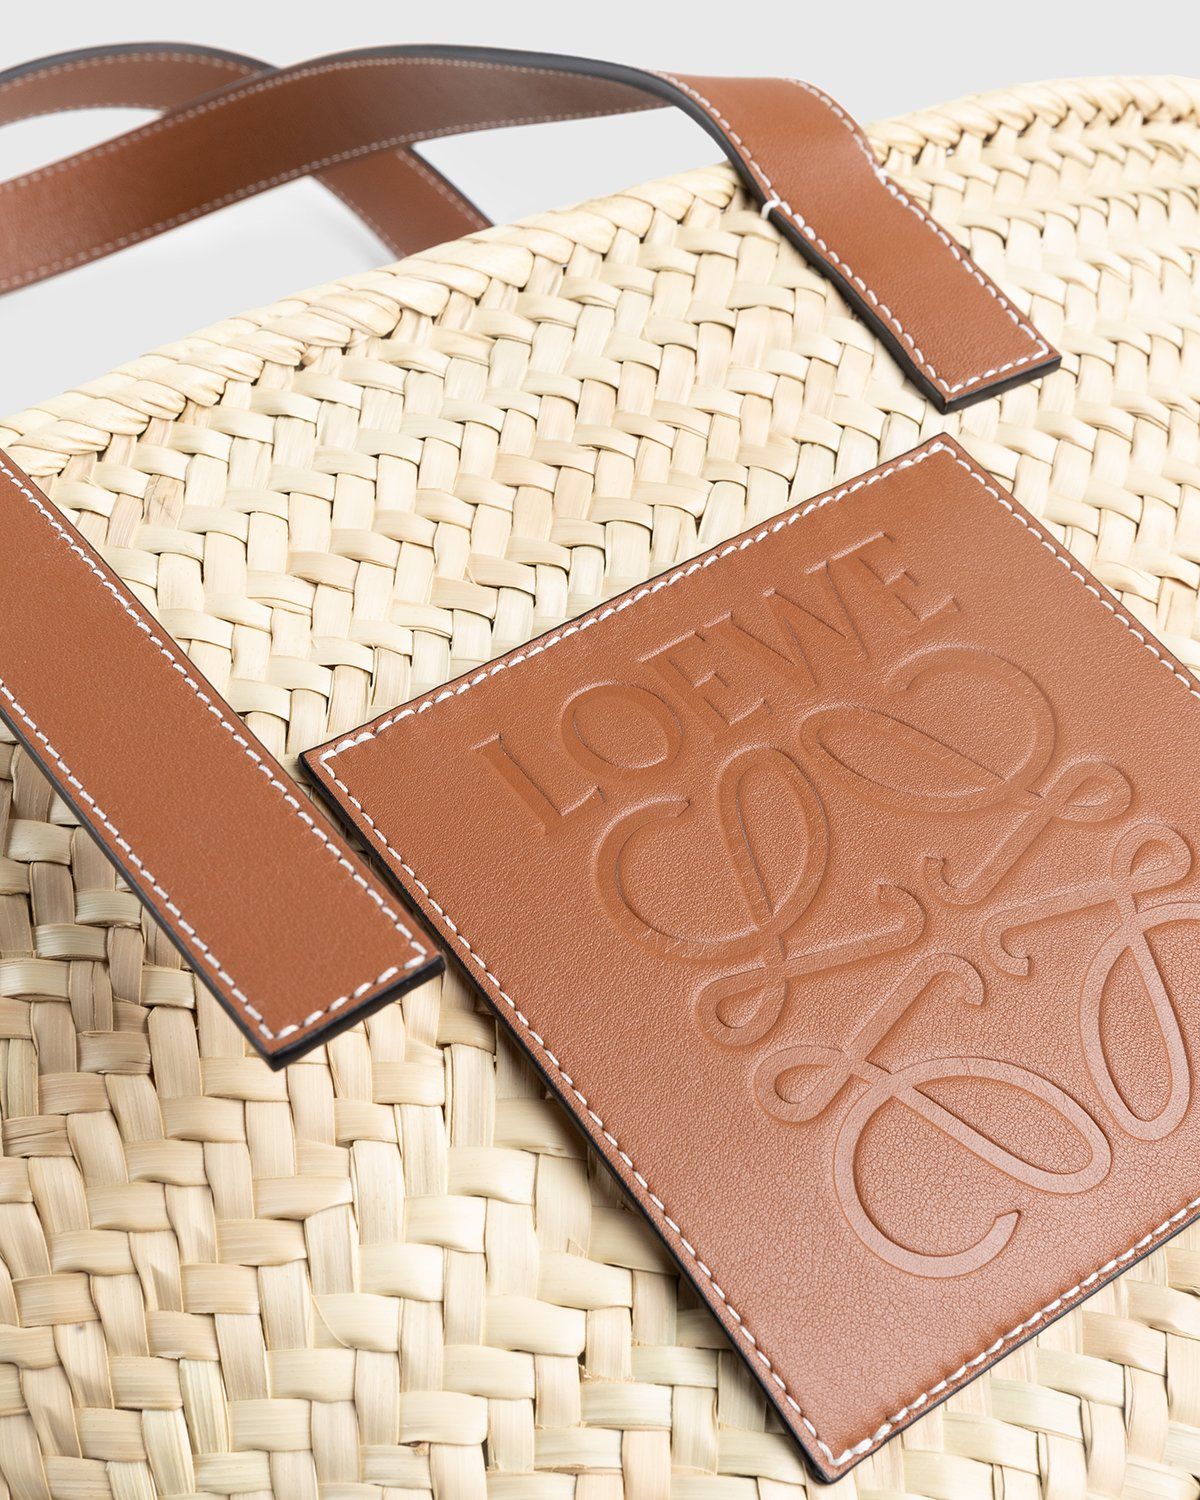 Loewe – Paula's Ibiza Basket Bag Natural/Tan - Shoulder Bags - Beige - Image 6